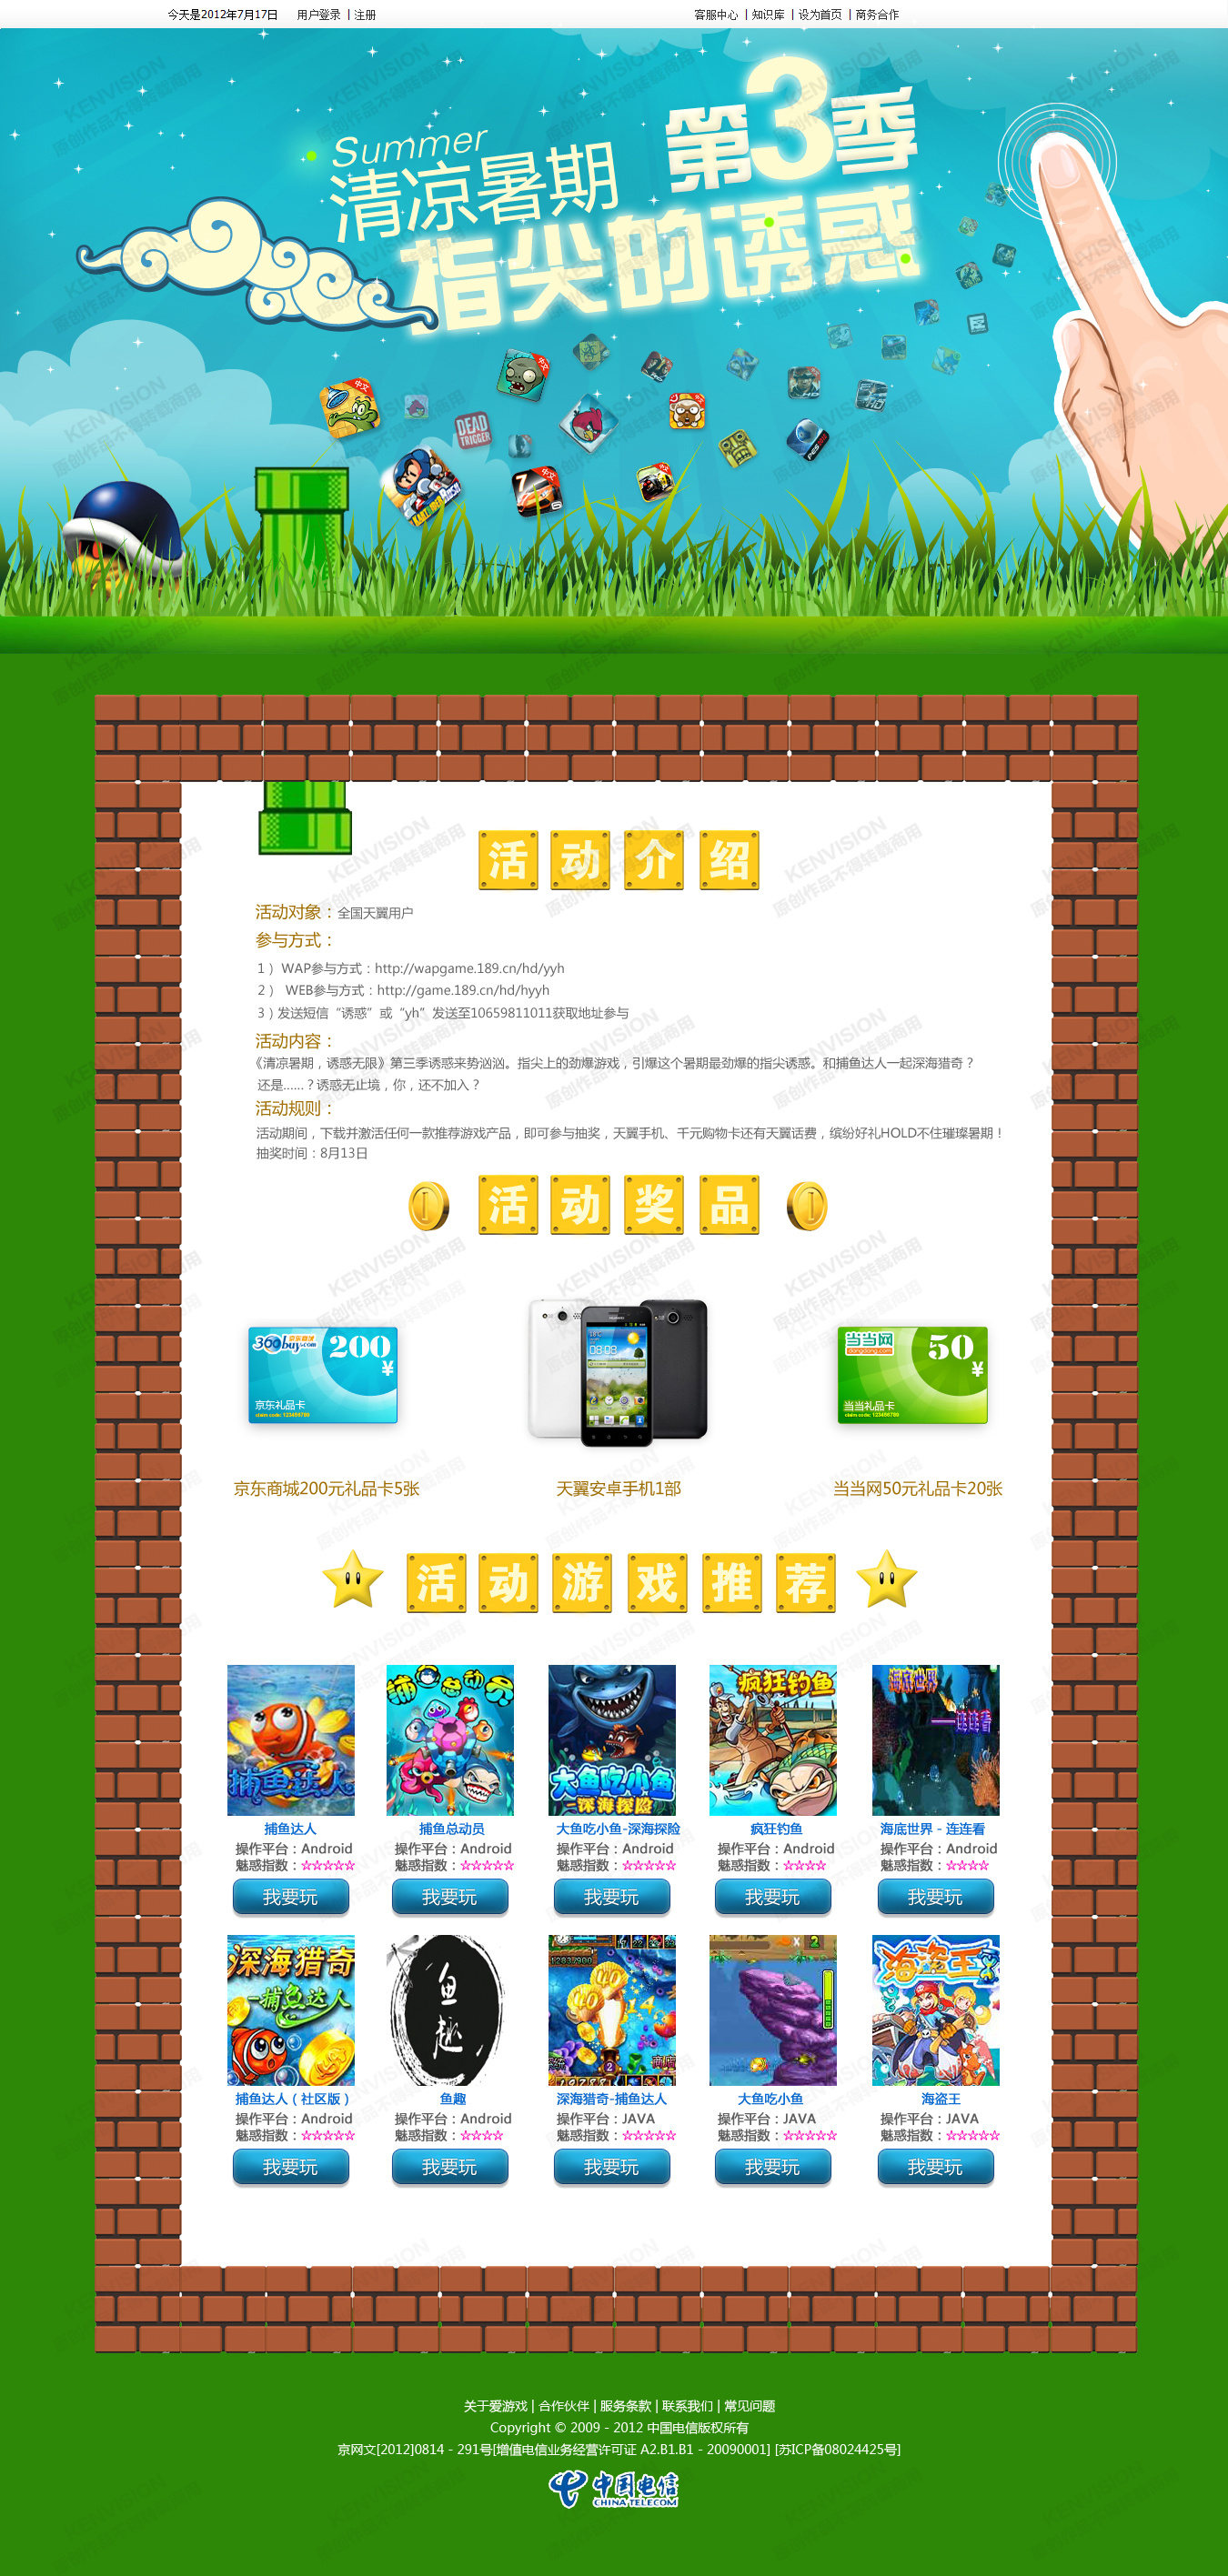 中国电信爱游戏APP软件推荐营销活动